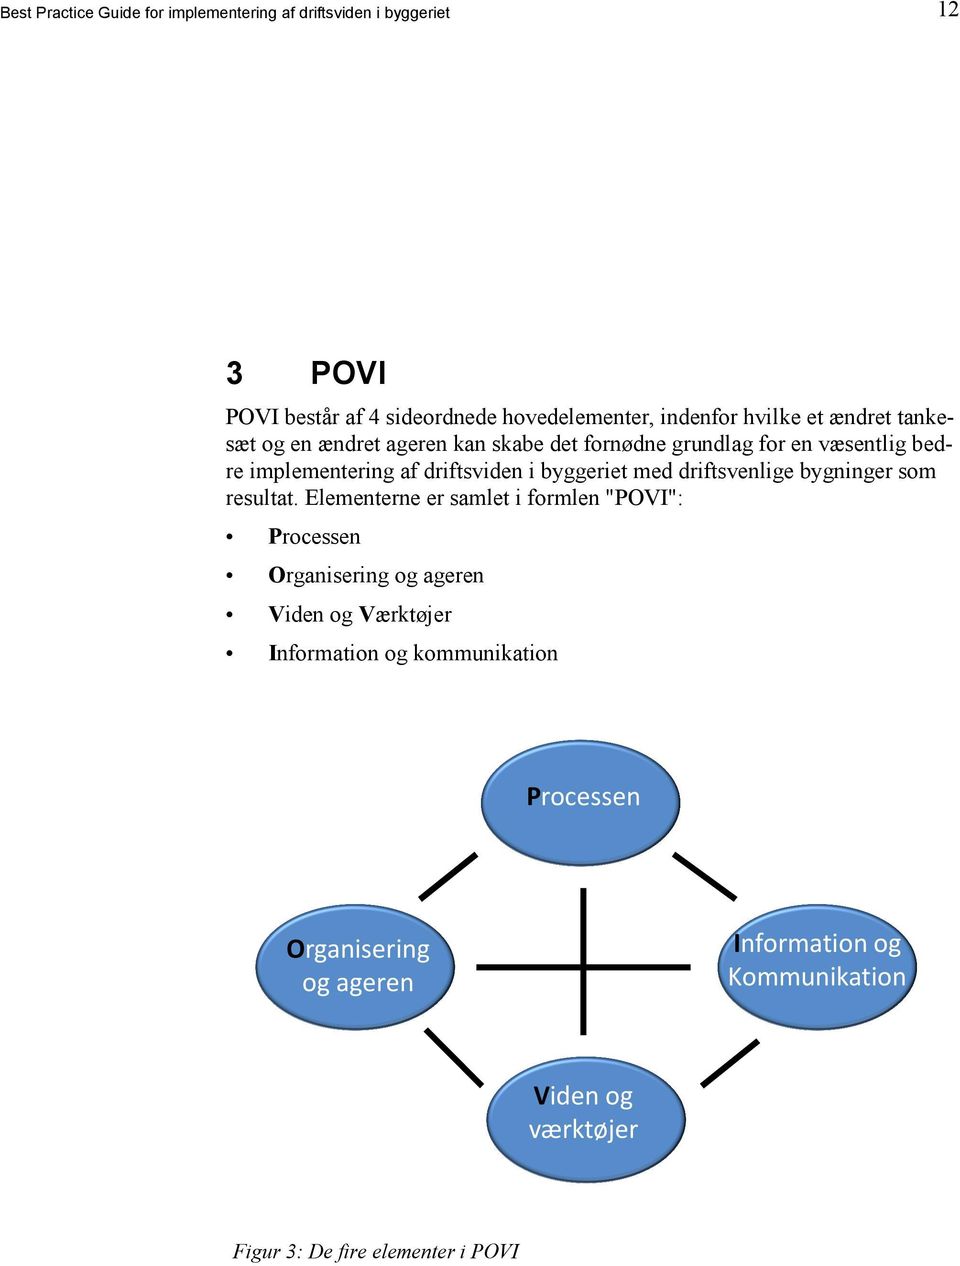 med driftsvenlige bygninger som resultat Elementerne er samlet i formlen "POVI": Processen Organisering og ageren Viden og Værktøjer